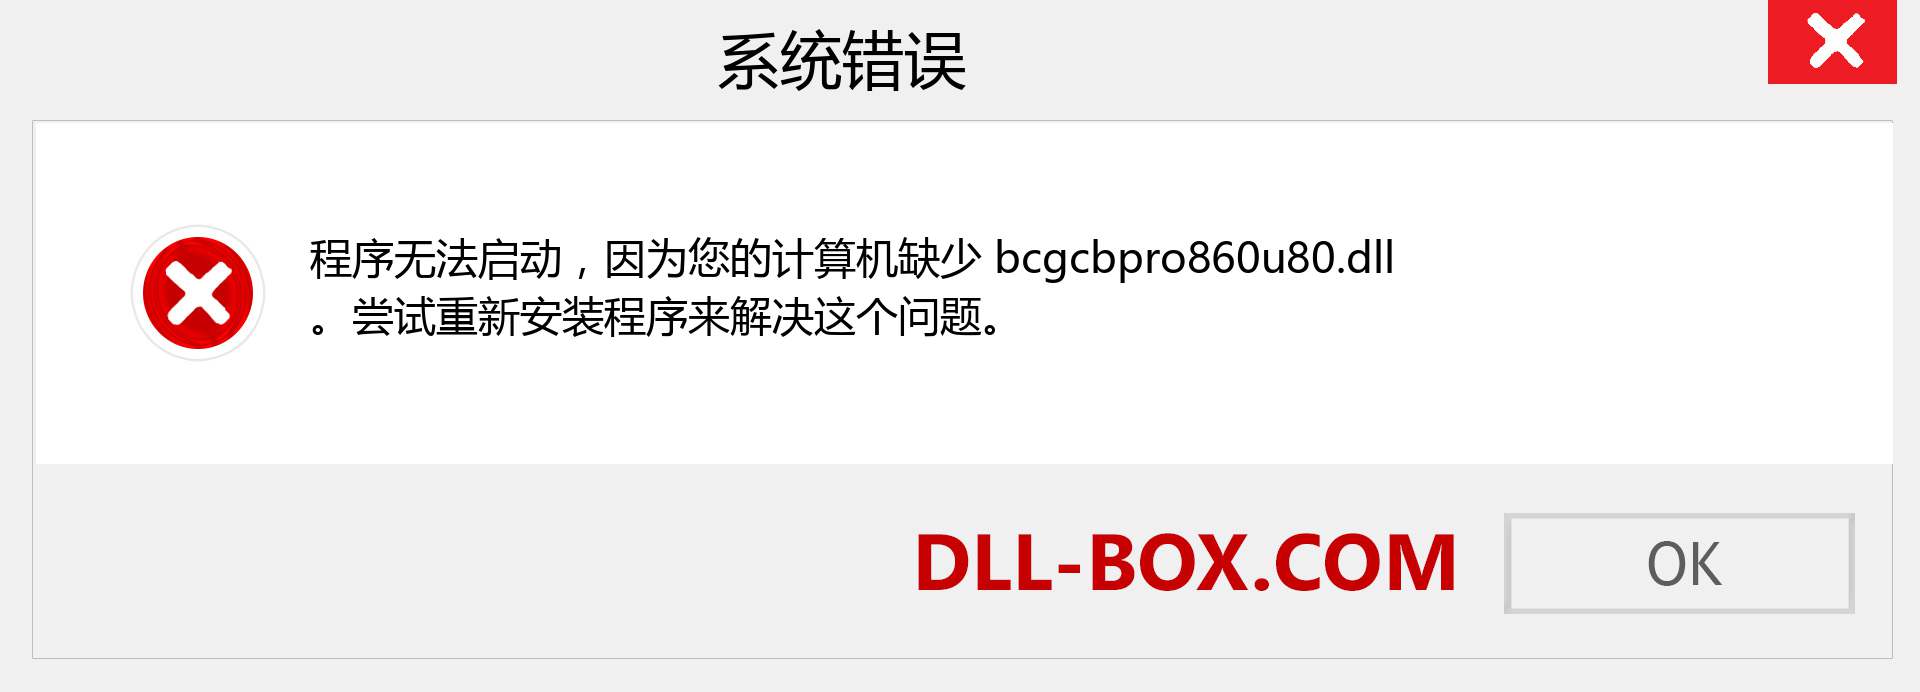 bcgcbpro860u80.dll 文件丢失？。 适用于 Windows 7、8、10 的下载 - 修复 Windows、照片、图像上的 bcgcbpro860u80 dll 丢失错误